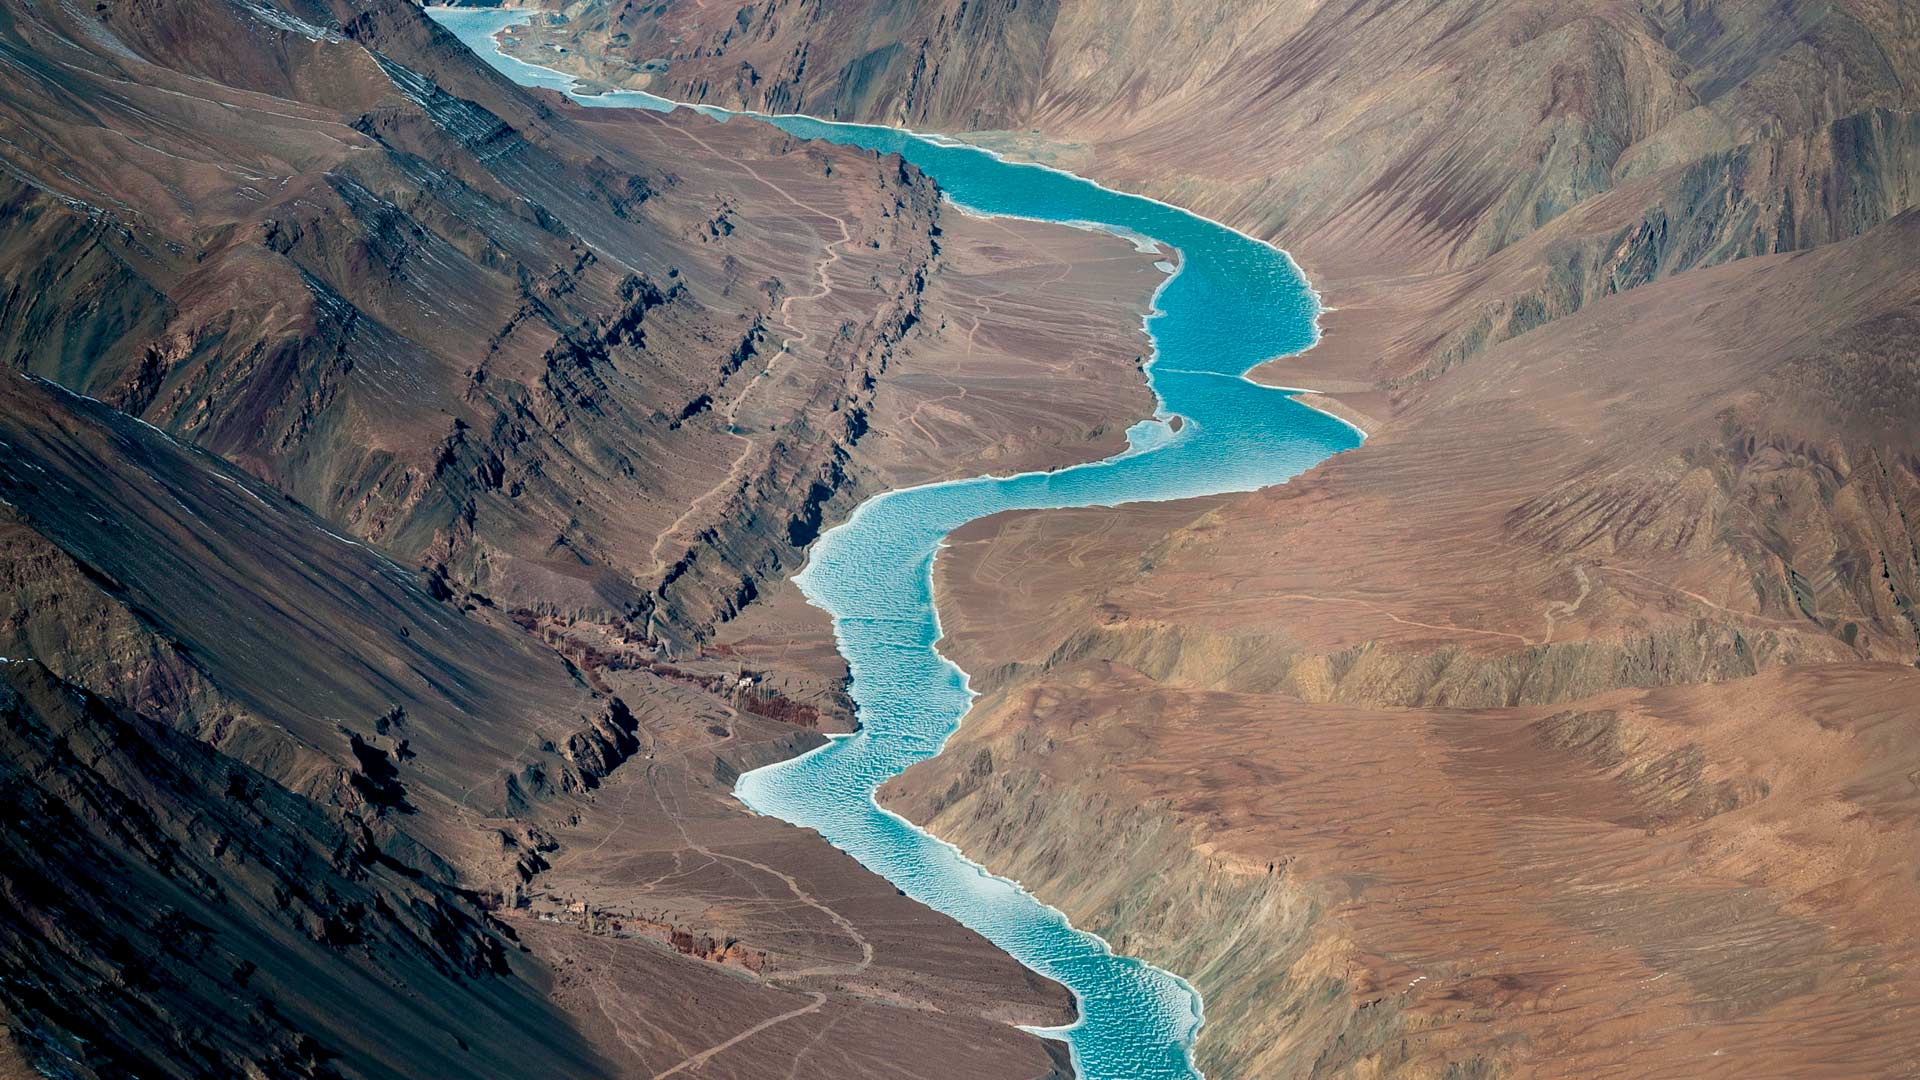 Himalayan River